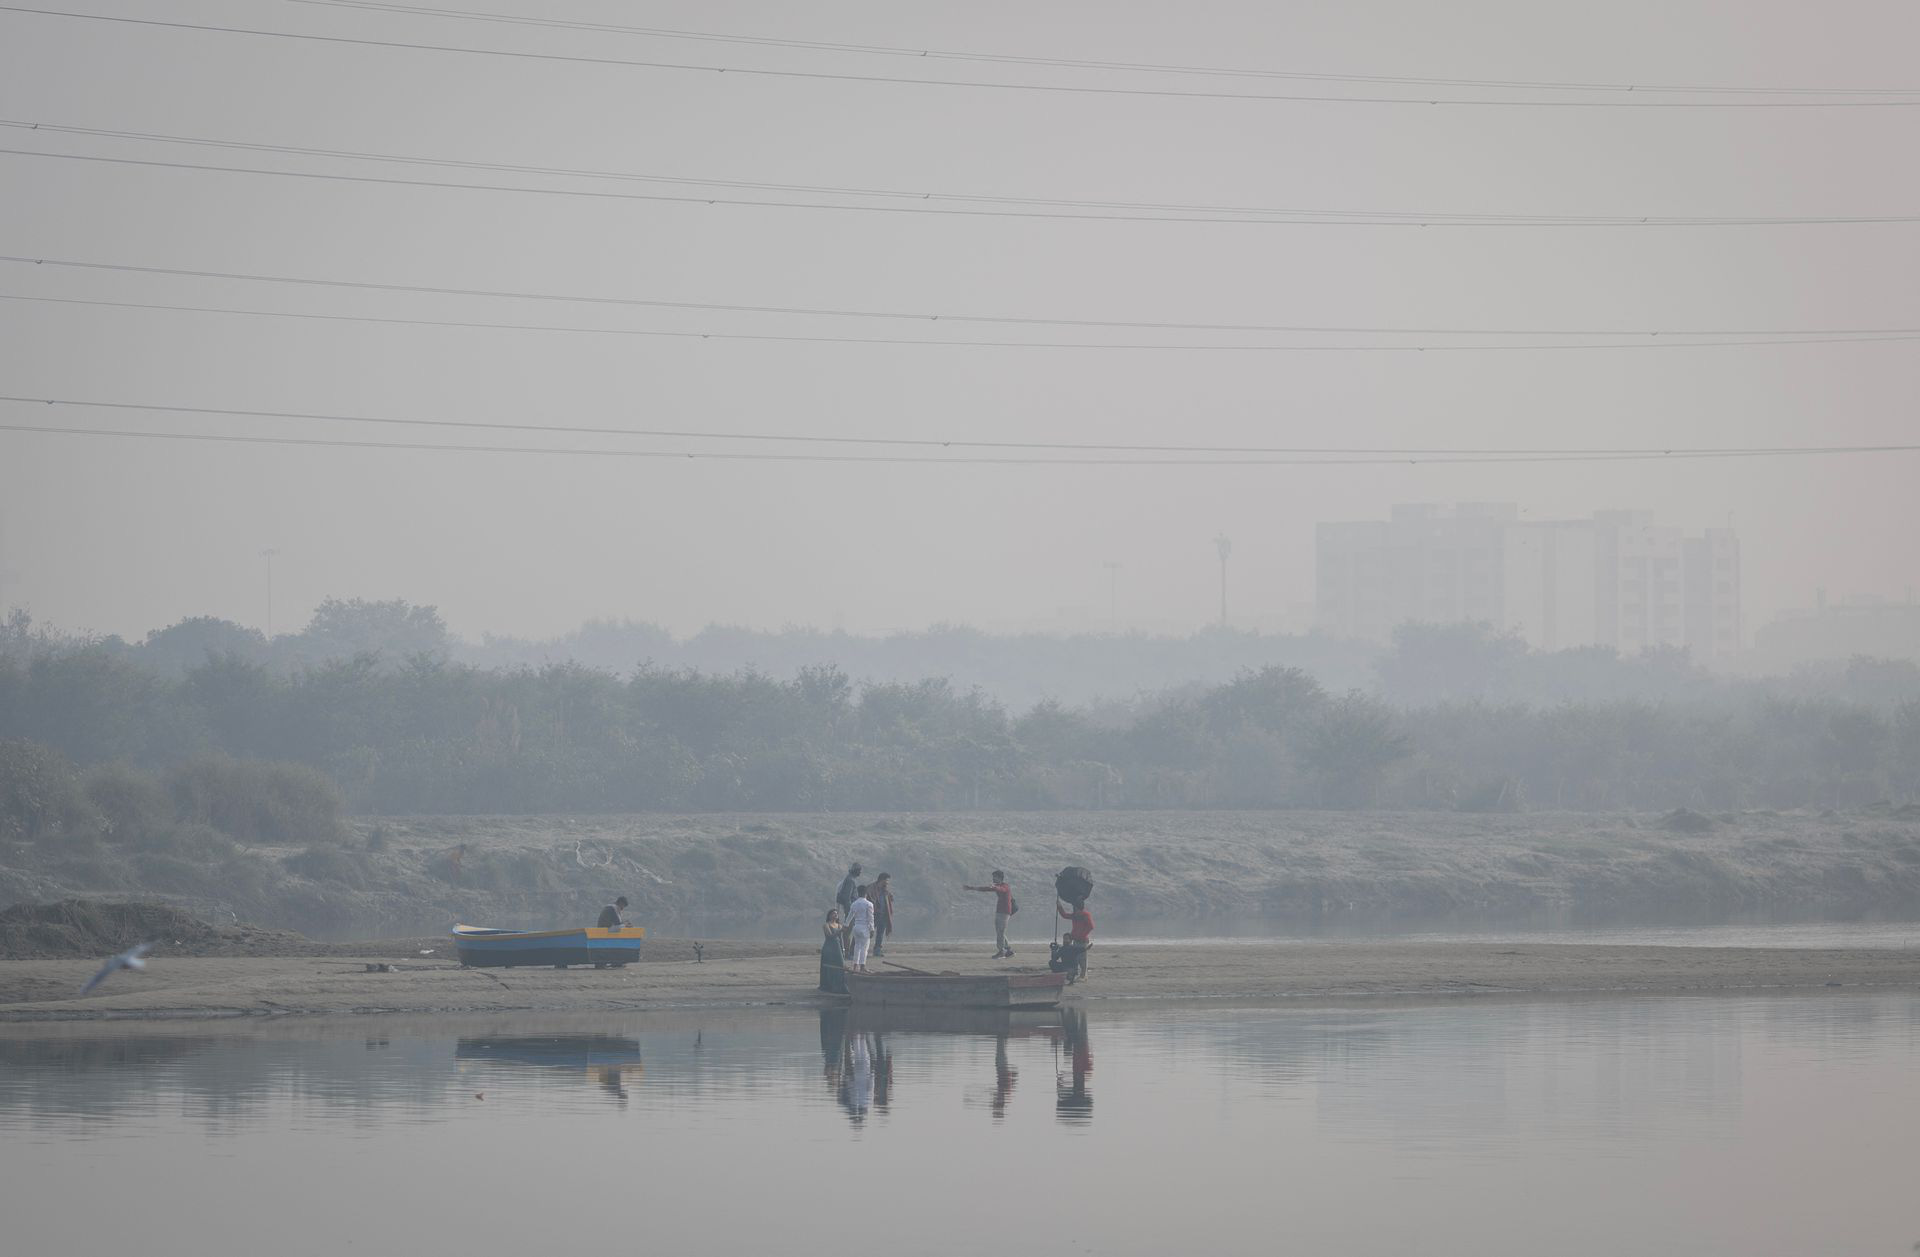 Ô nhiễm không khí nghiêm trọng, cư dân New Delhi kêu gọi đóng cửa trường học - Ảnh 1.